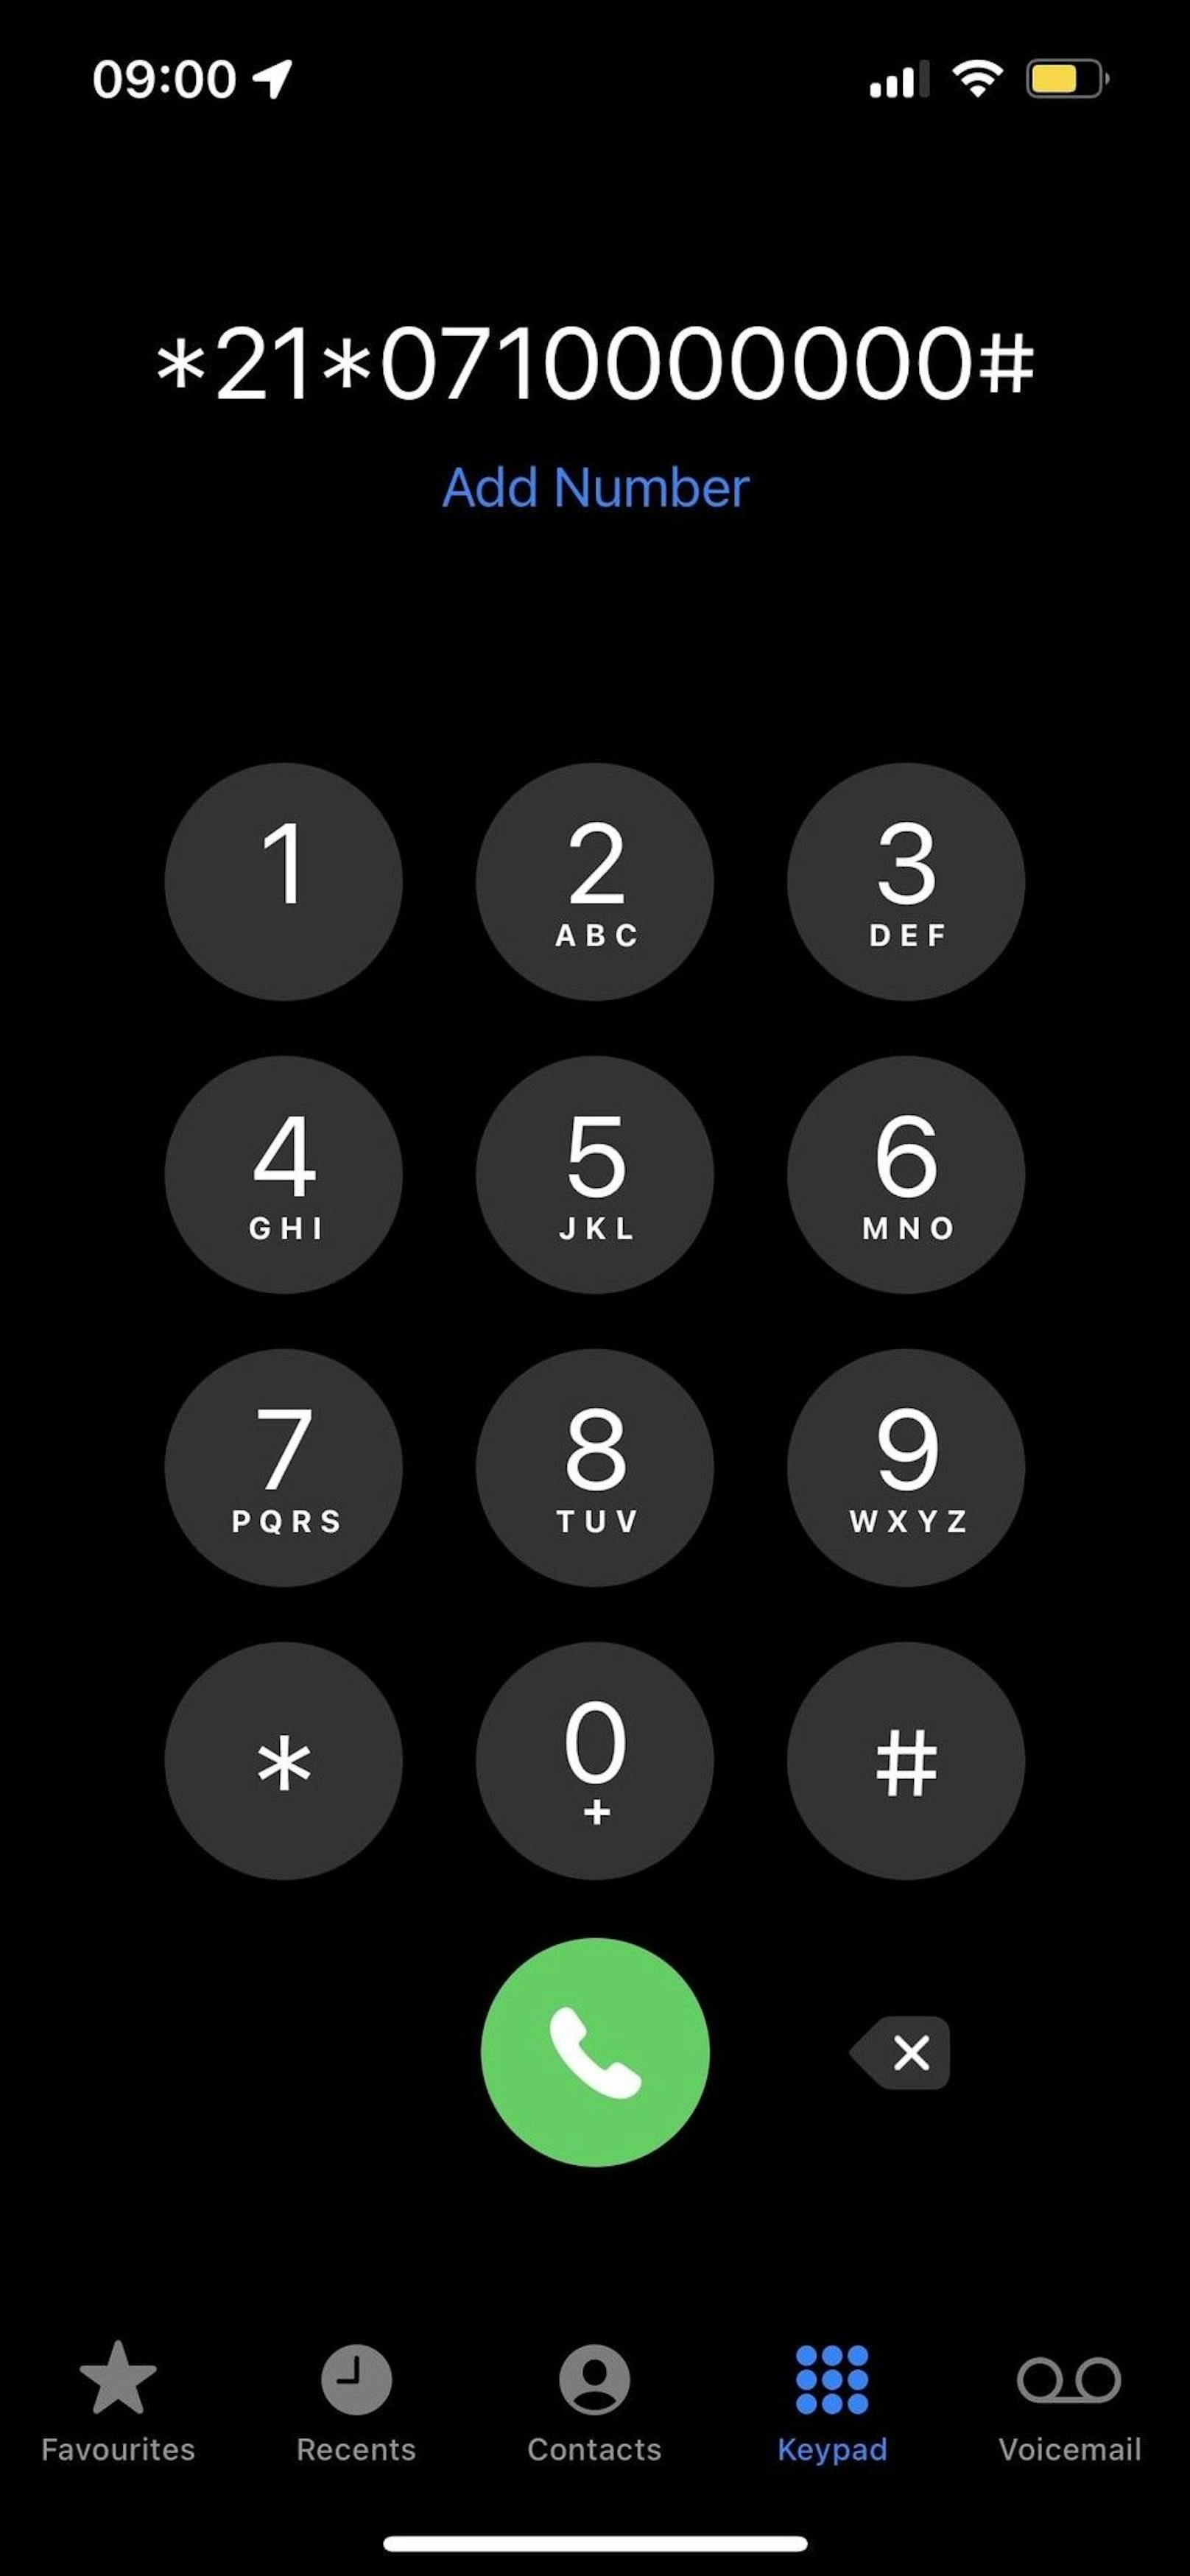 Wählt man die Nummer, die so aussieht, werden alle Anrufe auf eine andere Nummer umgeleitet.